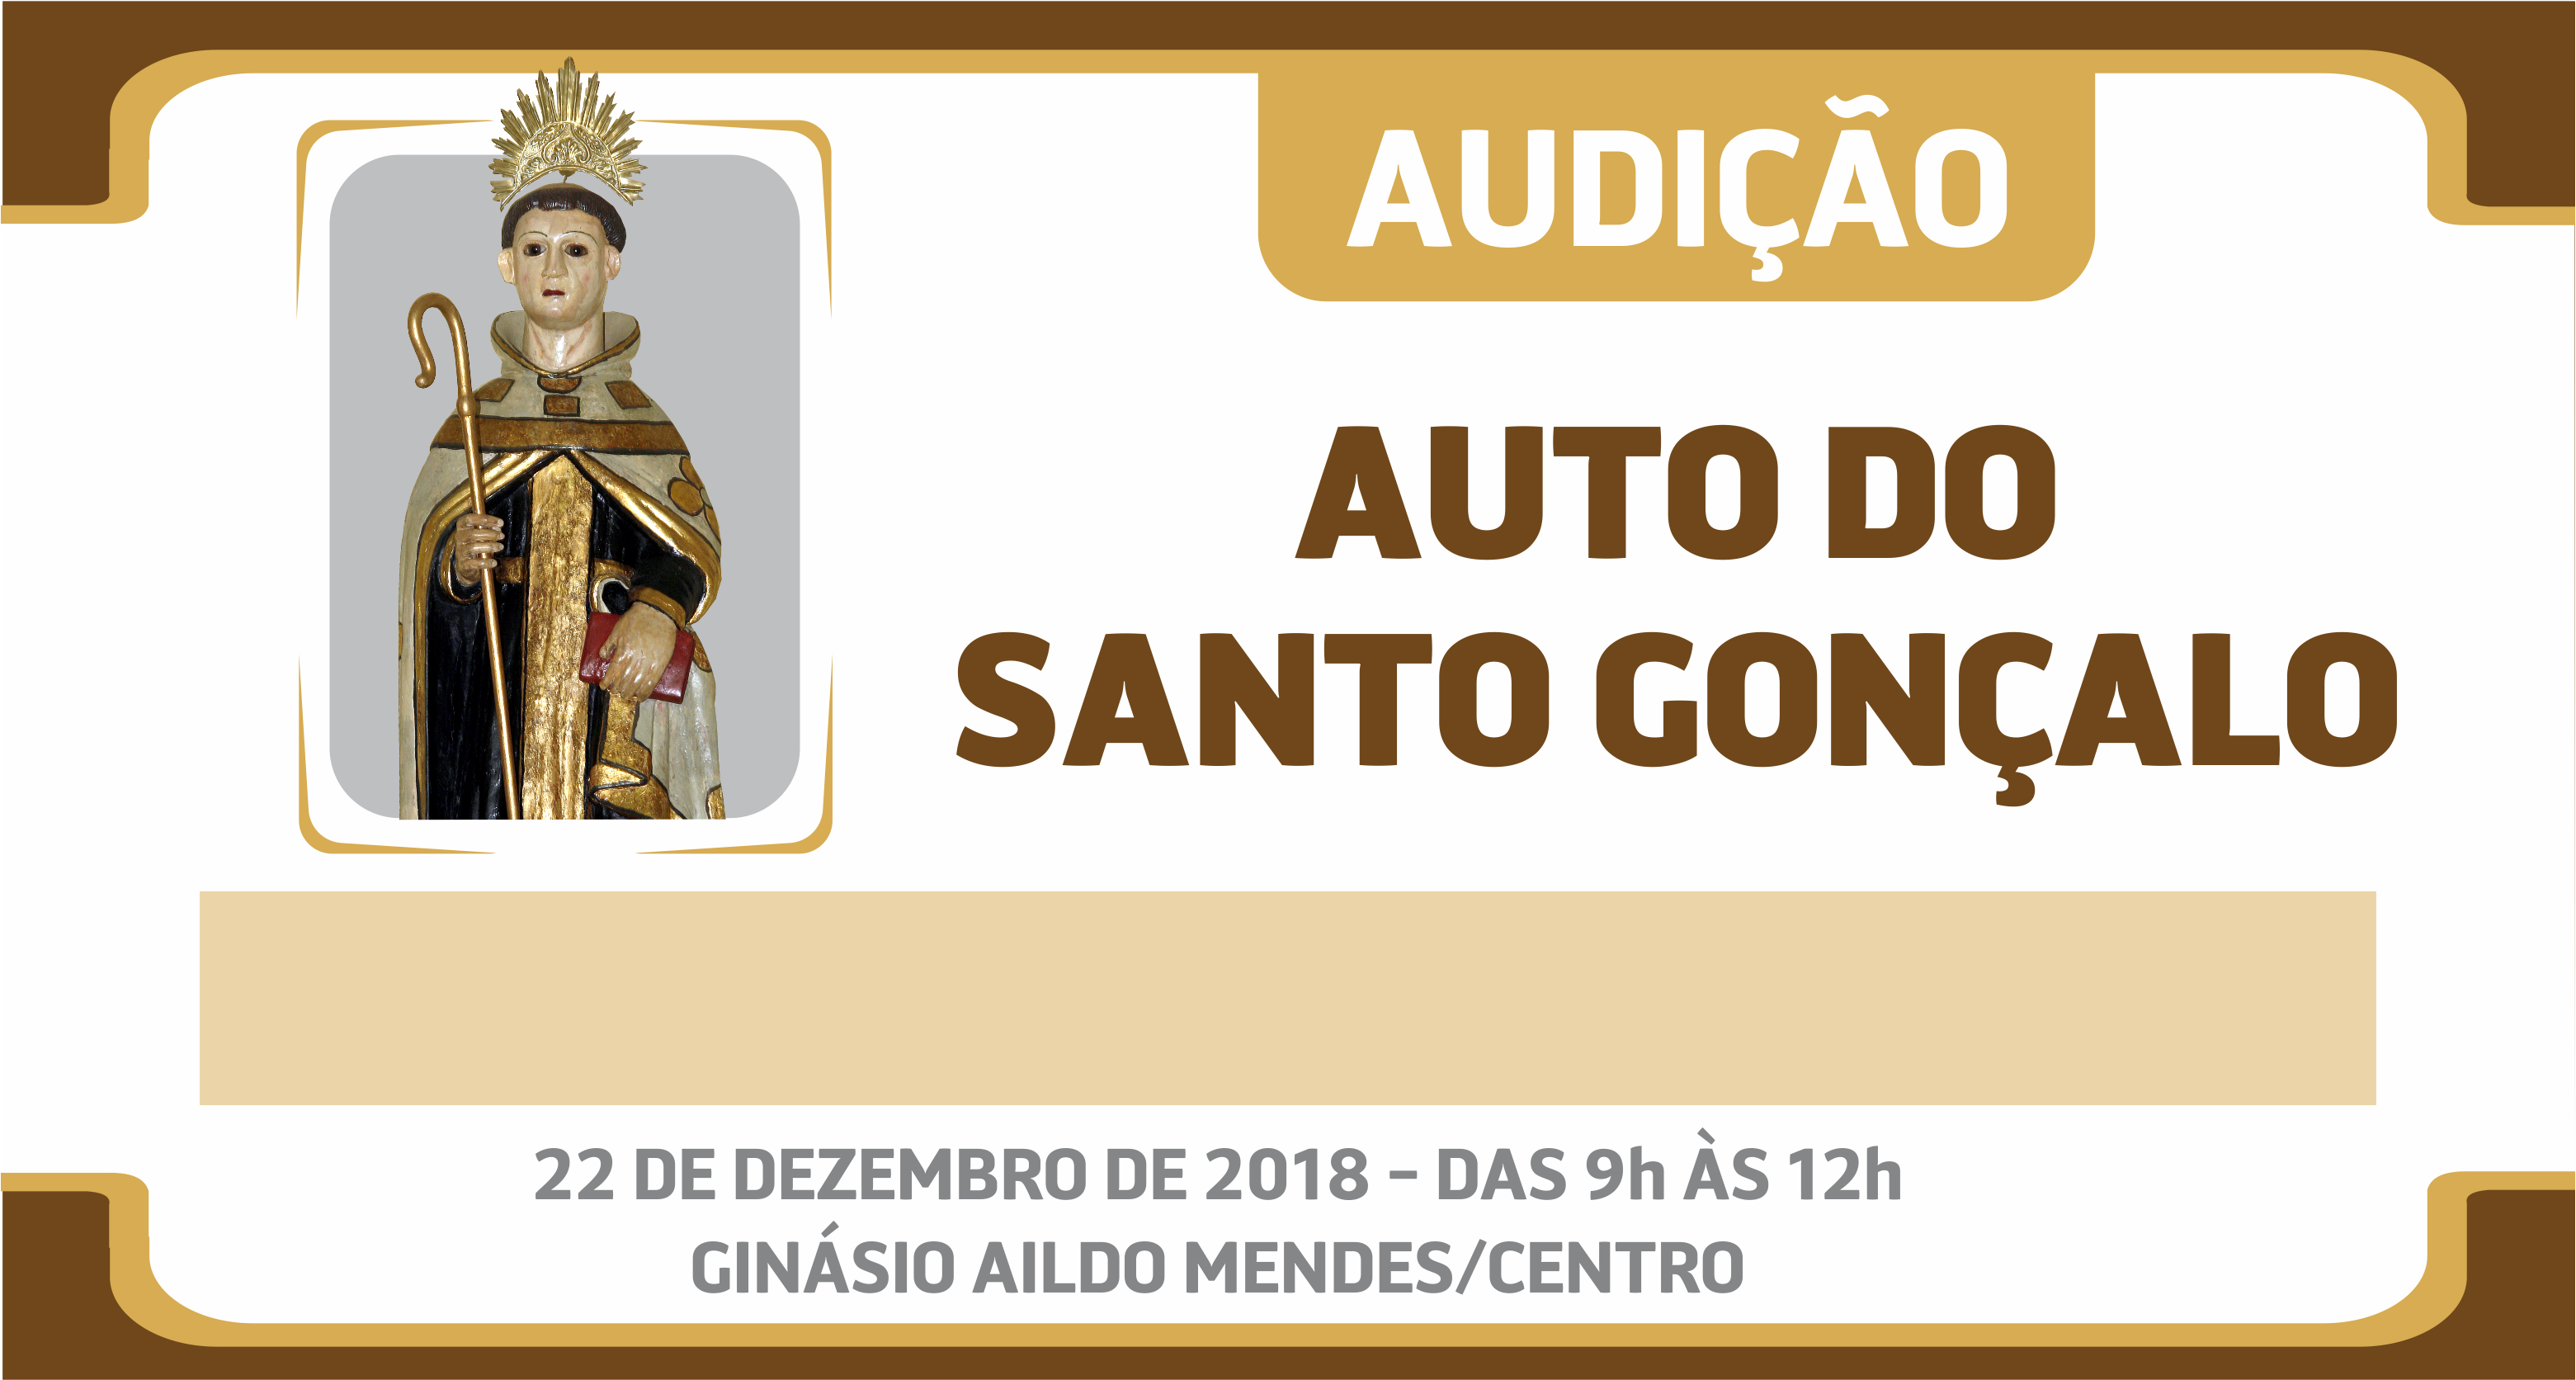 Cultura: Auto do Santo Gonçalo inicia audições no próximo sábado (22)